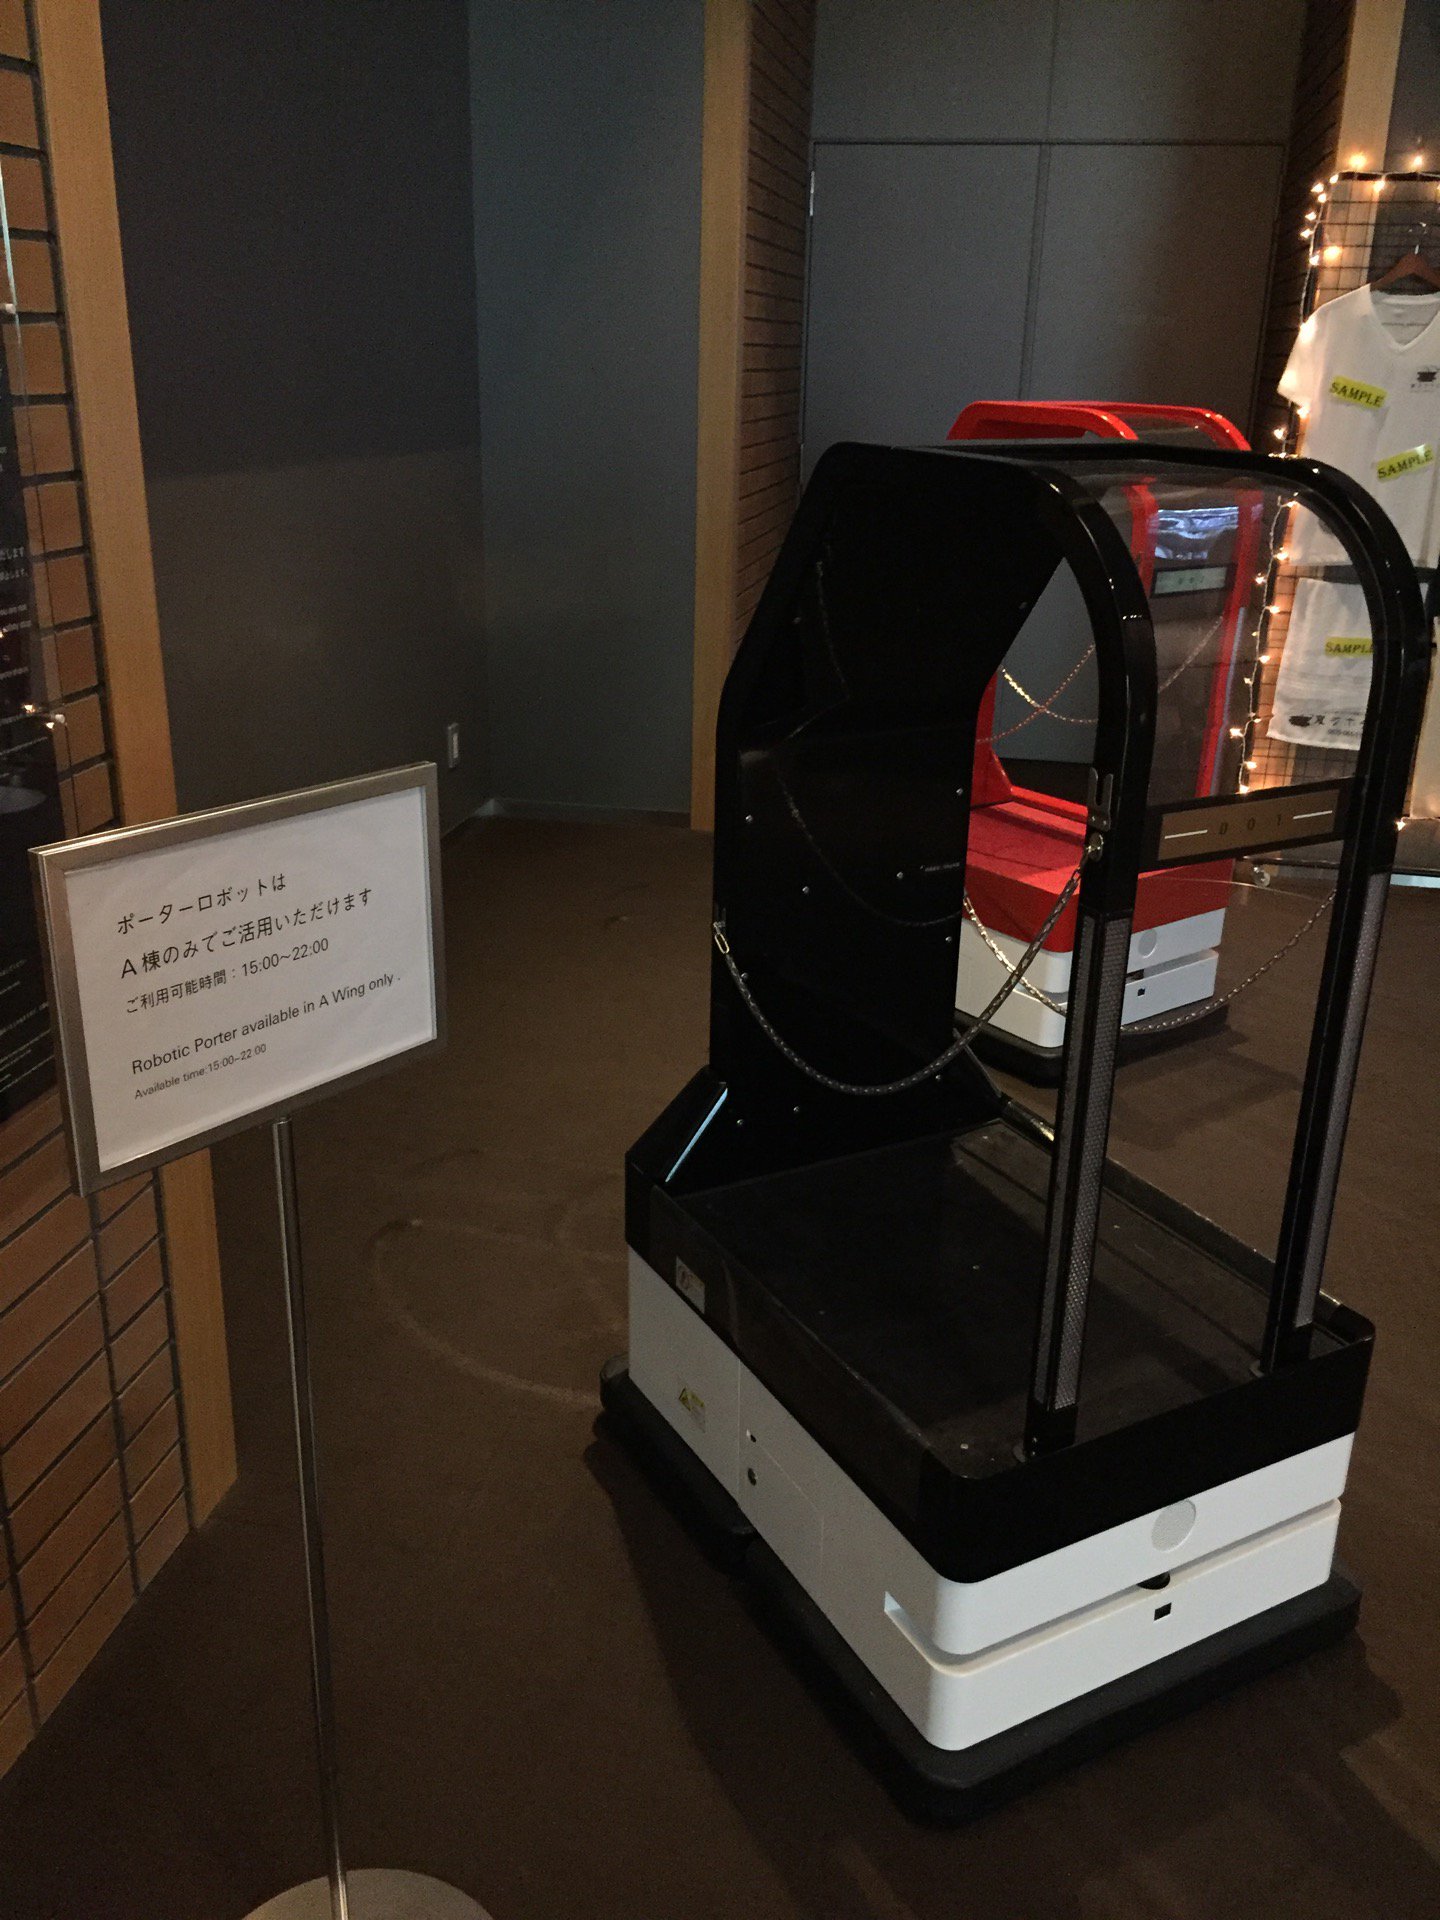 (ノД`)「ポーターロボットはA棟のみでご利用いただけます」 (@ 変なホテル in 佐世保市, 長崎県) https://t.co/ABuJbXce8f https://t.co/gVKQk4XoCX